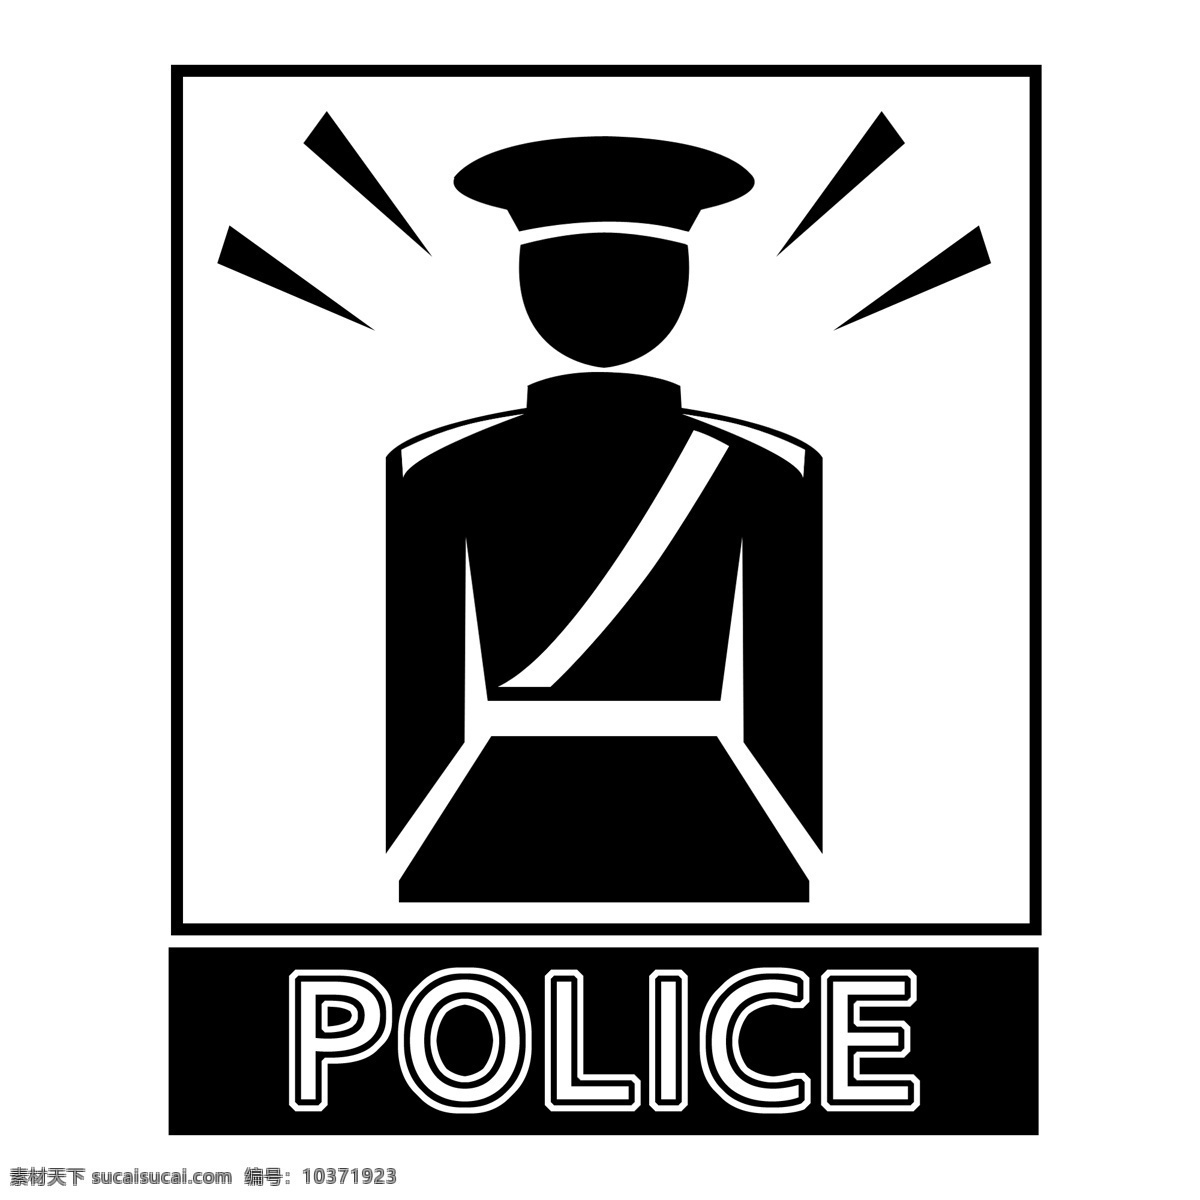 黑色 扁平化 警卫室 标识 公共设施 标识图标 安全 保卫 门卫 警察 安全保卫